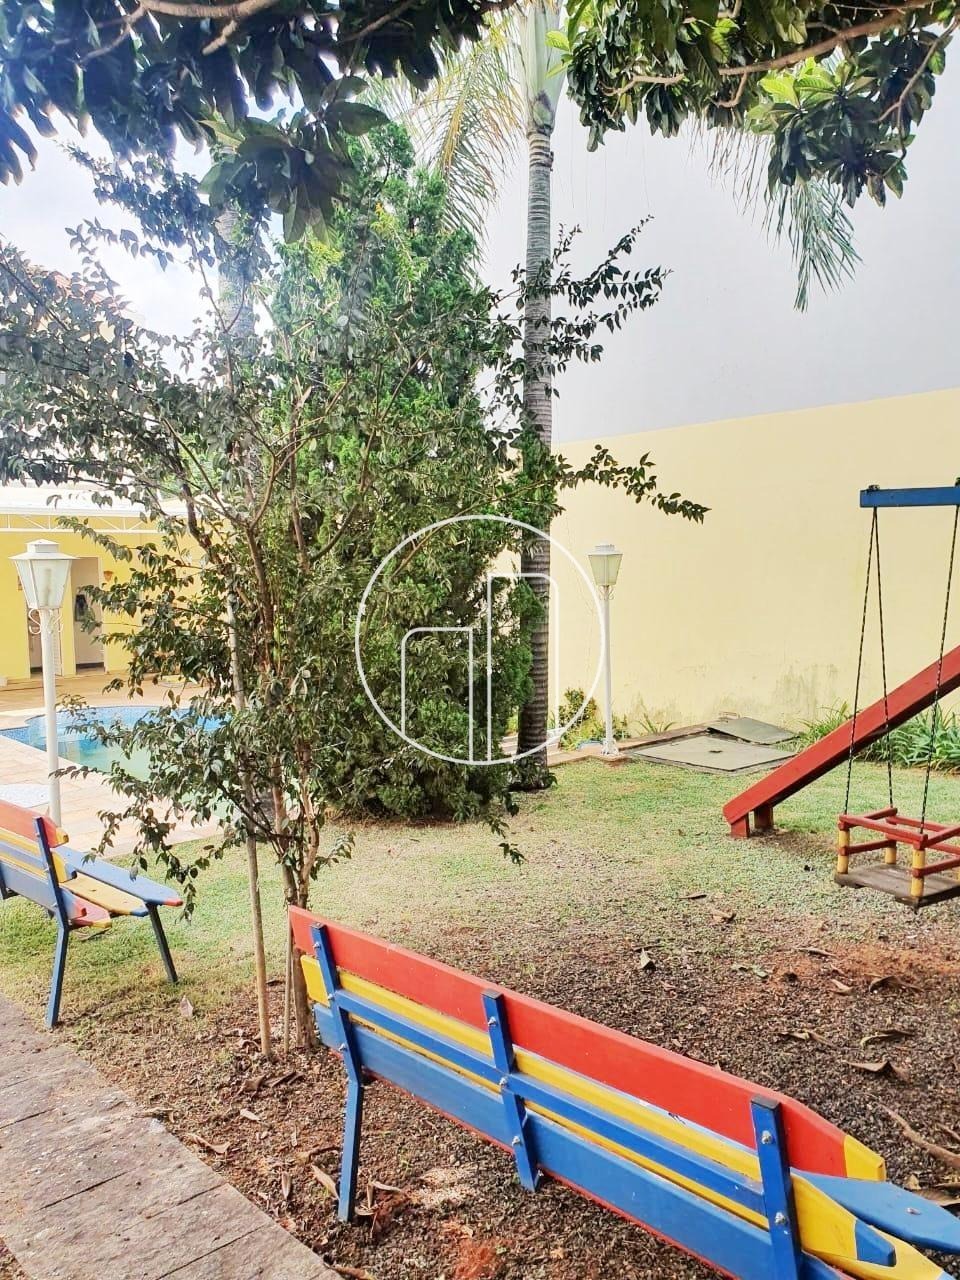 Piccoloto -Casa à venda no Jardim das Paineiras em Campinas